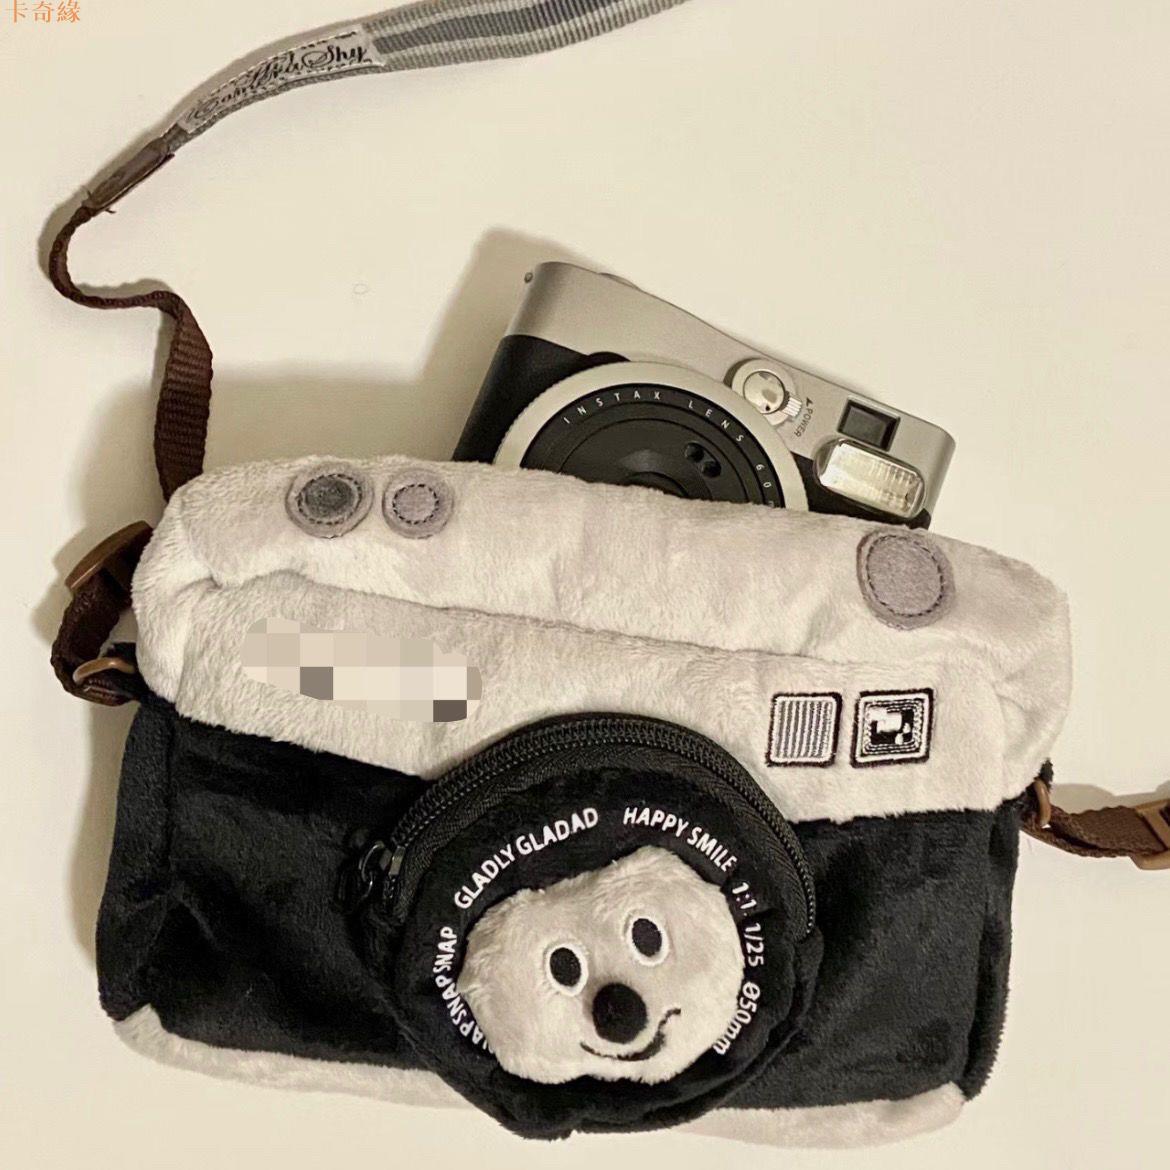 相機包可愛卡通相機包防摔笑臉毛絨復古相機造型斜挎包手機包ccd相機包